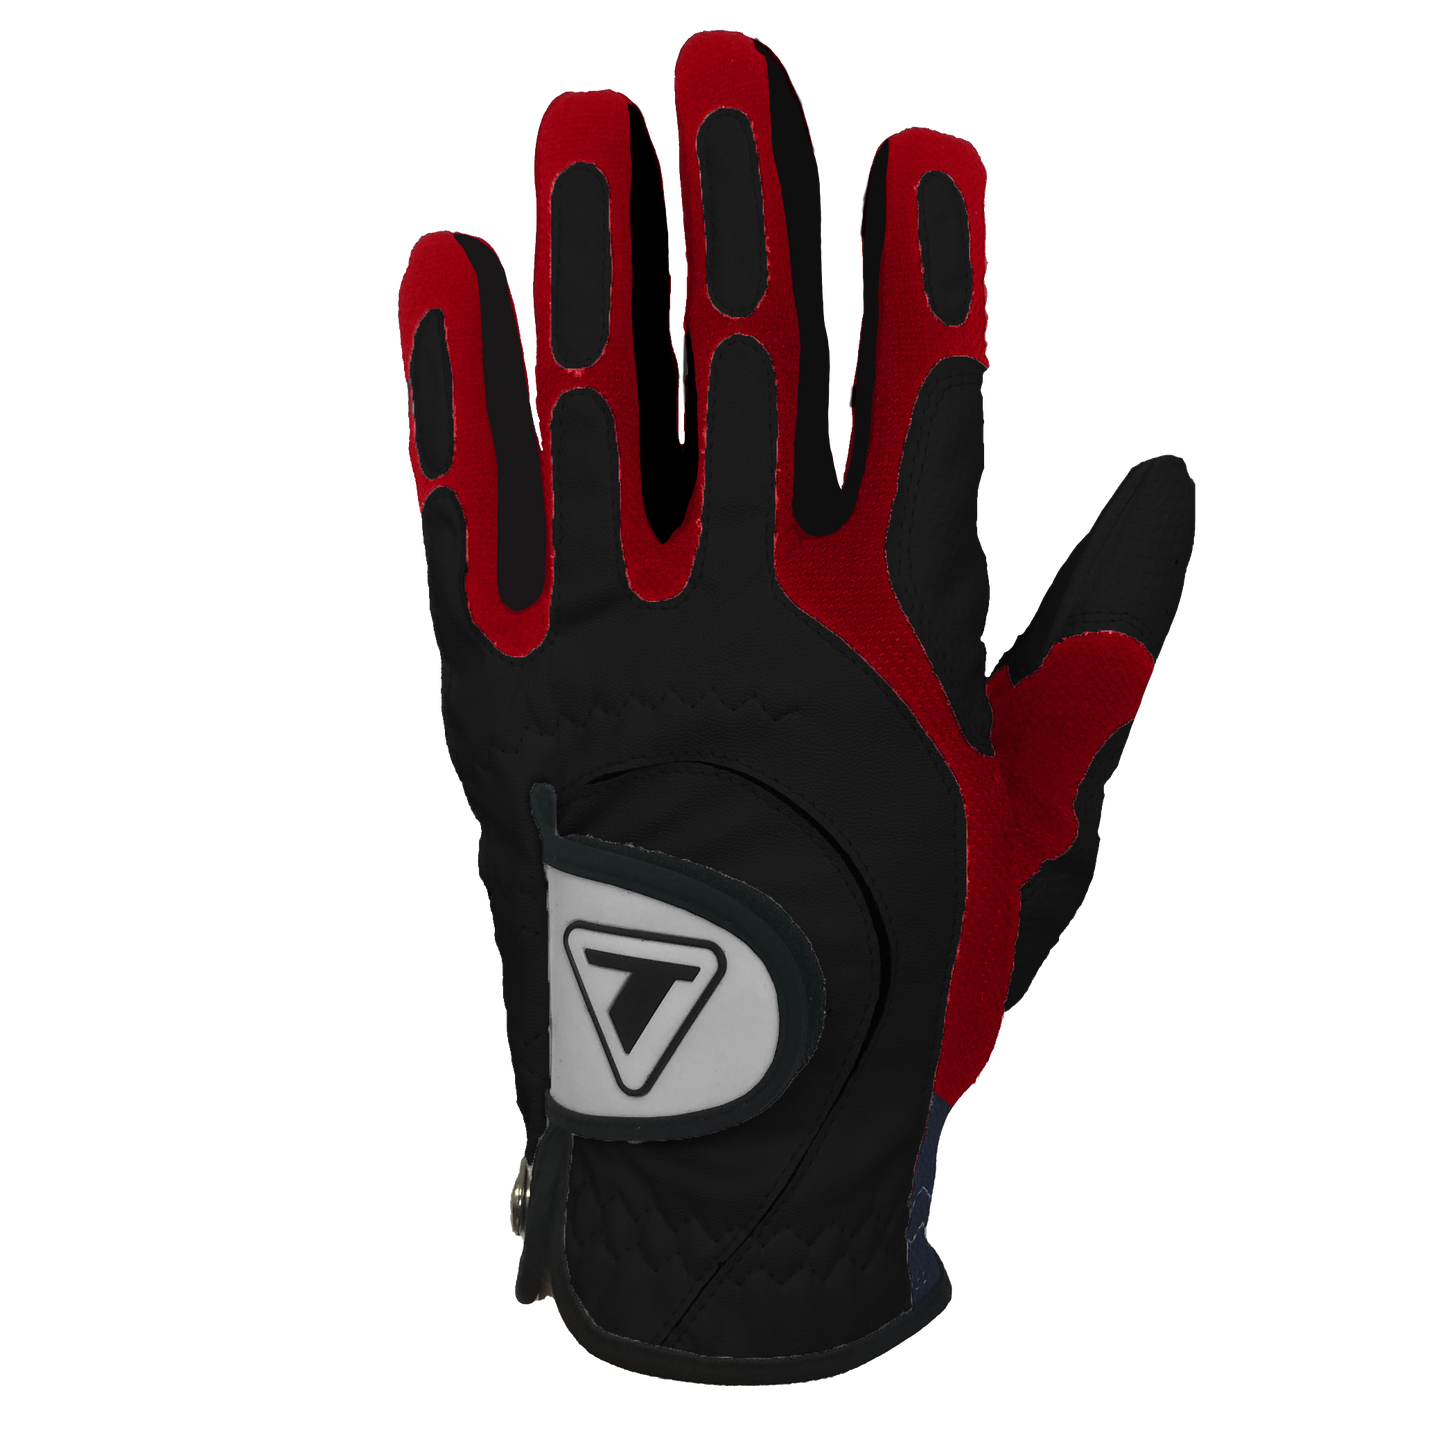 Men's Tracer Gloves